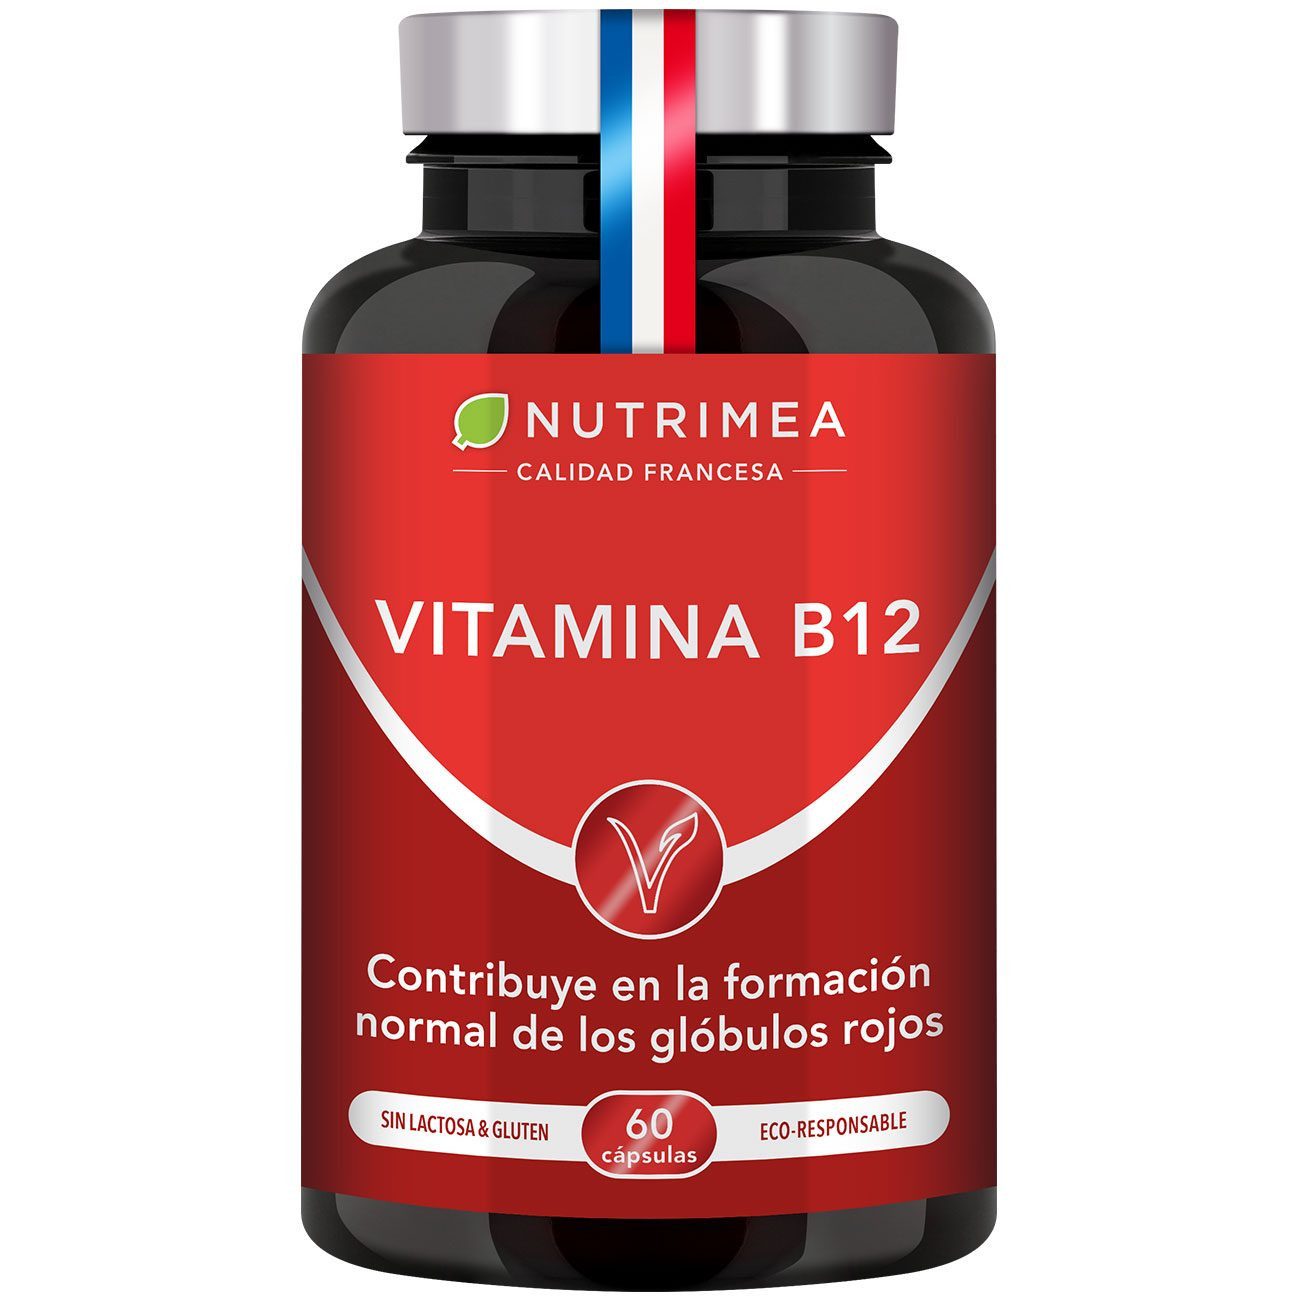 Foto del complemento alimenticio Vitamina B12